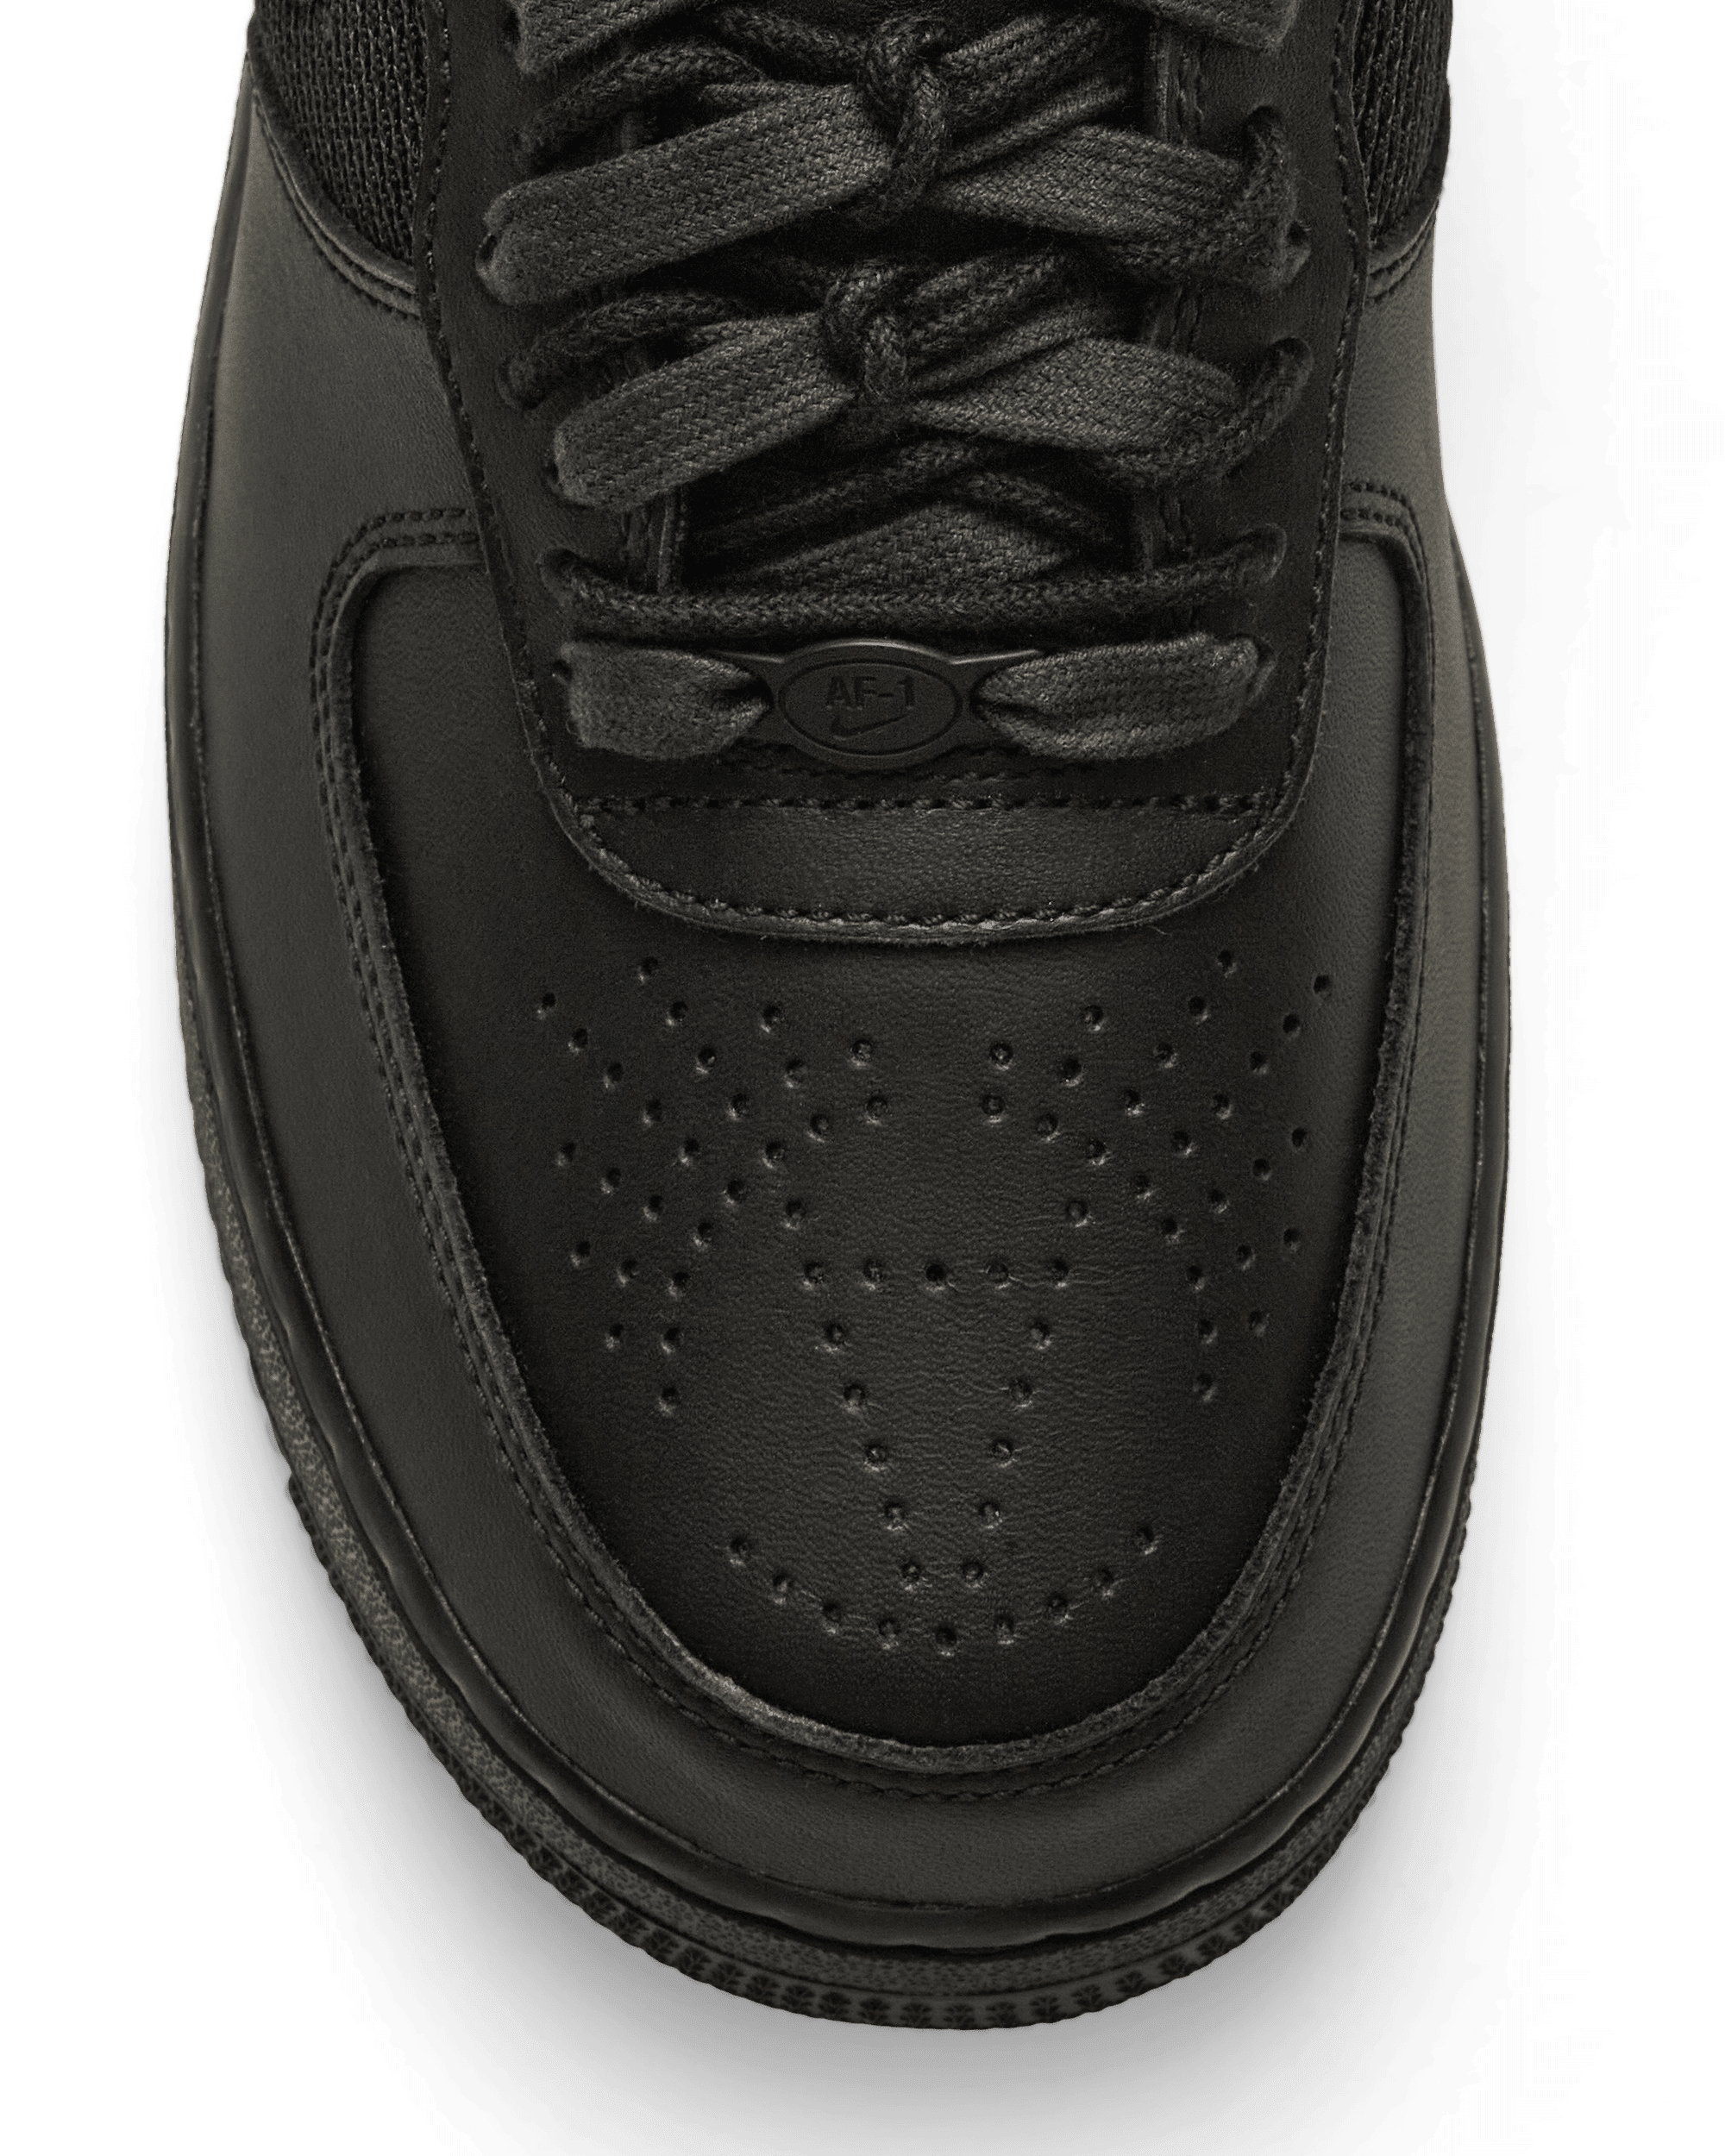 Nike Slam Jam Air Force 1 Low Sp Black/Off Noir Sneakers Low DX5590-001